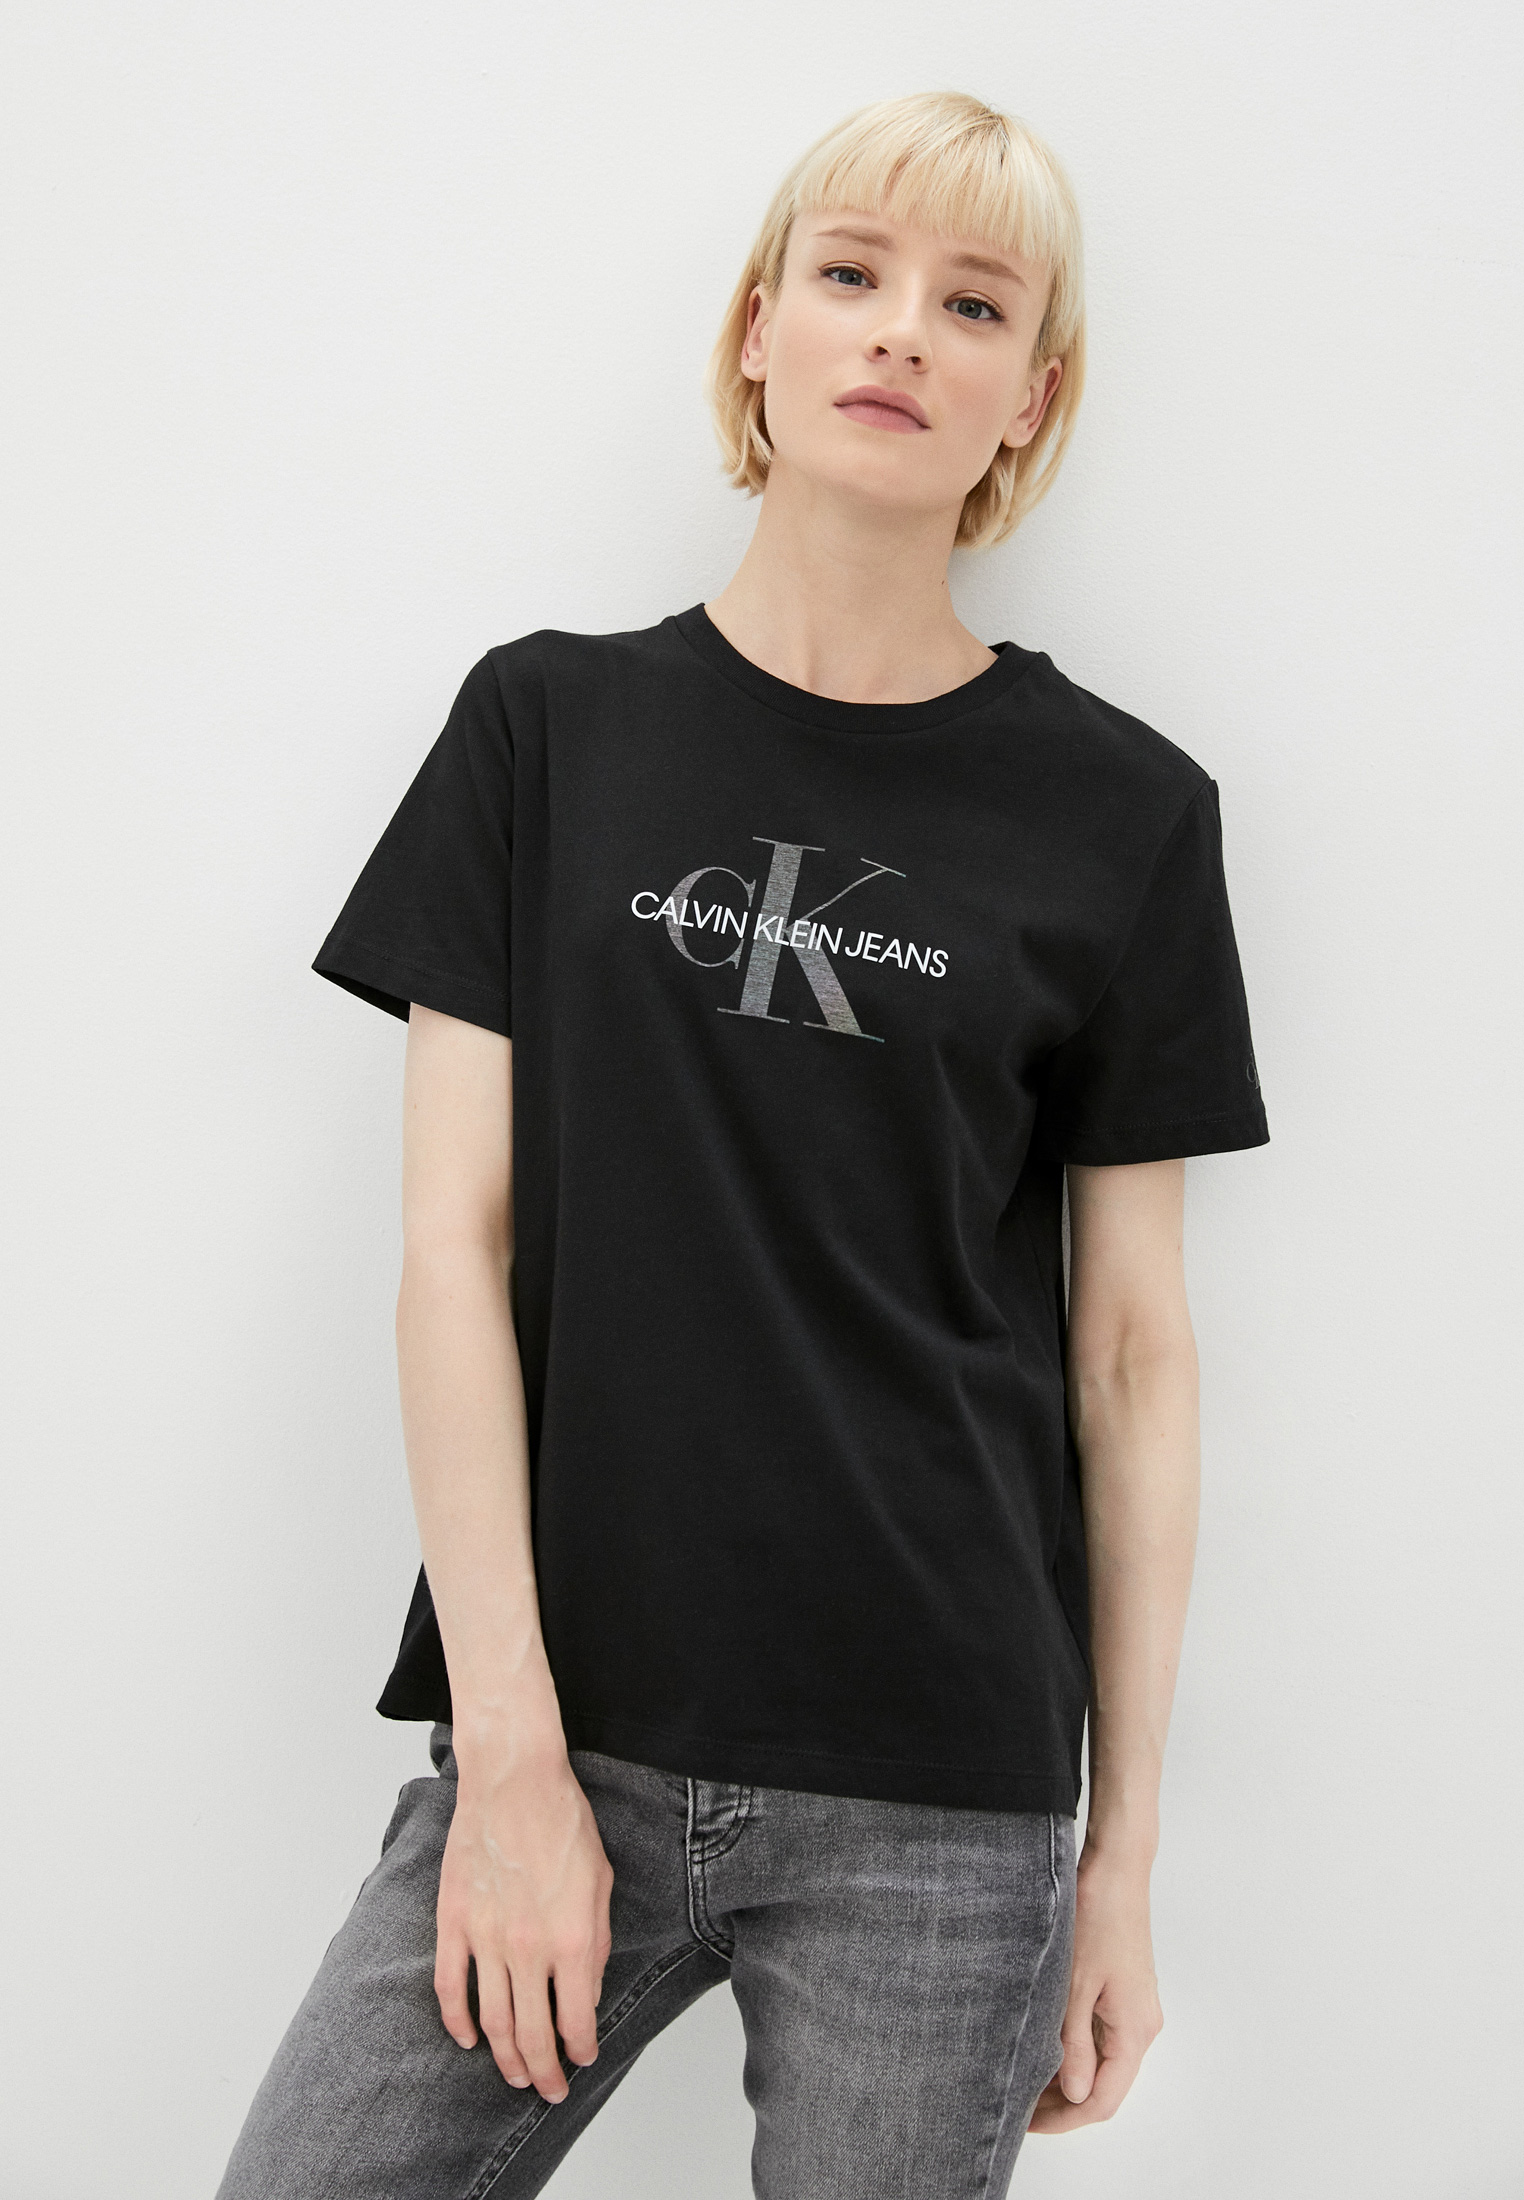 Футболка Calvin Klein Jeans, цвет: черный, CA939EWMOSH2 — купить в  интернет-магазине Lamoda